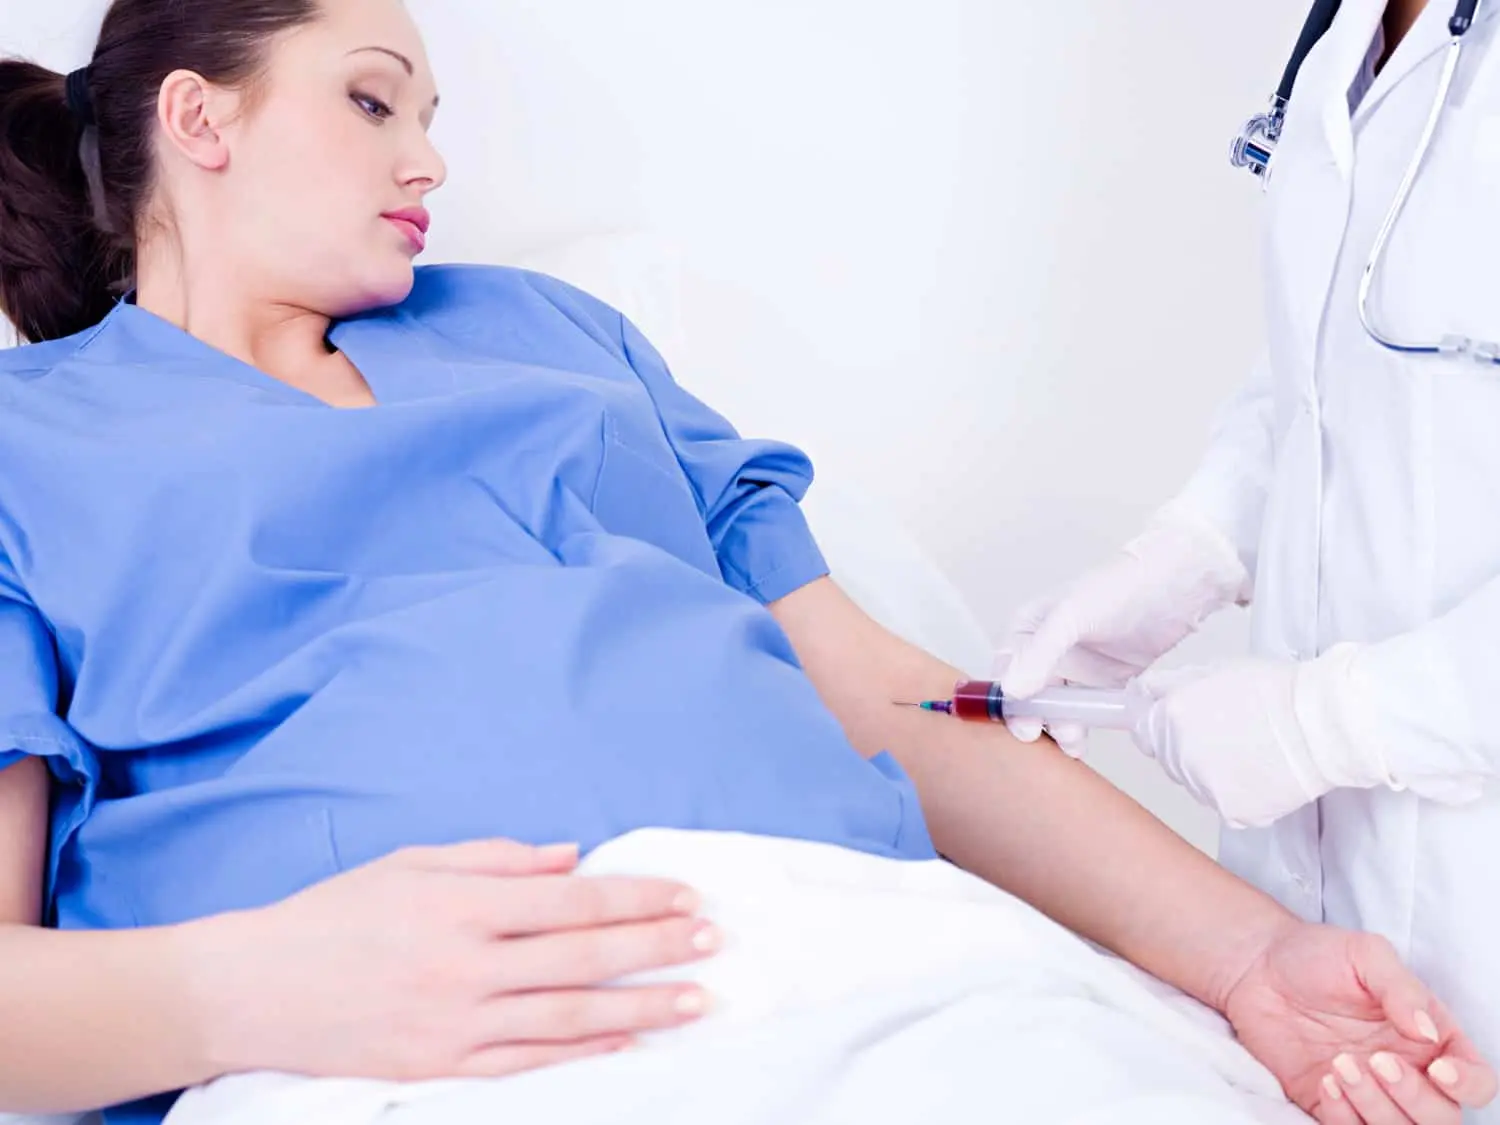 Triple Marker Test in Pregnancy & Cost